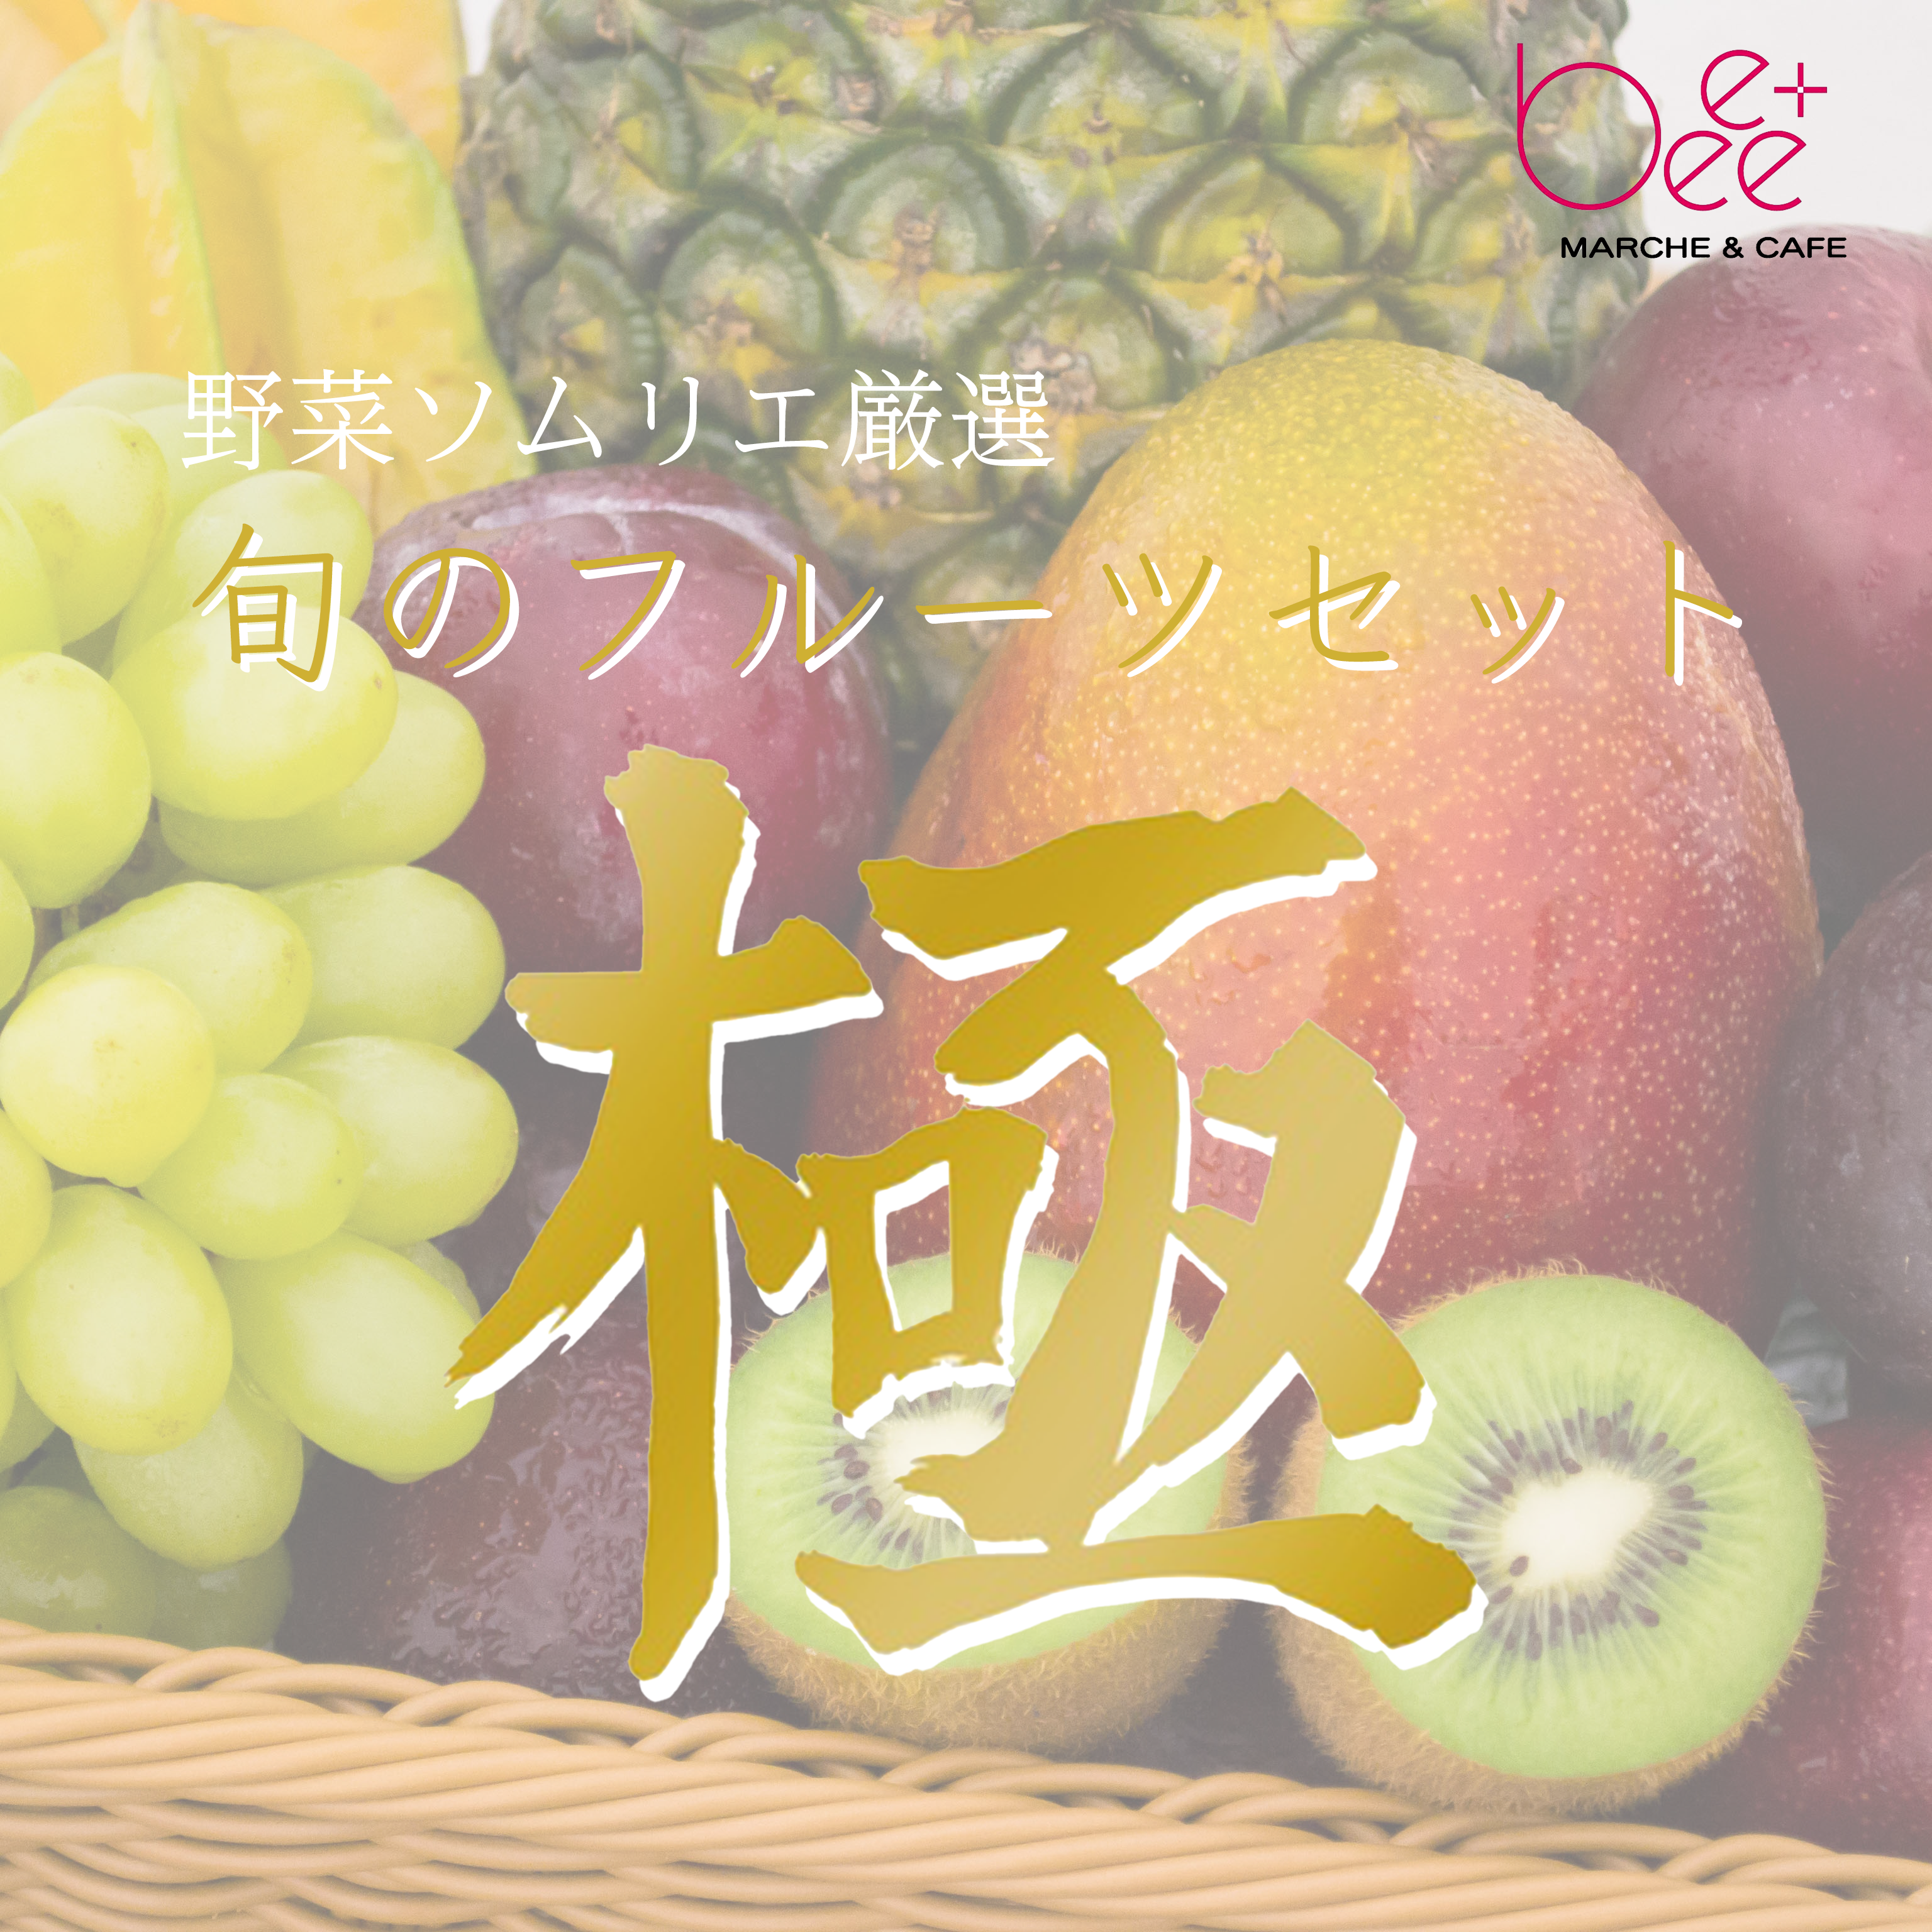 【送料込み】野菜ソムリエが選ぶ旬のフルーツセット『極み』